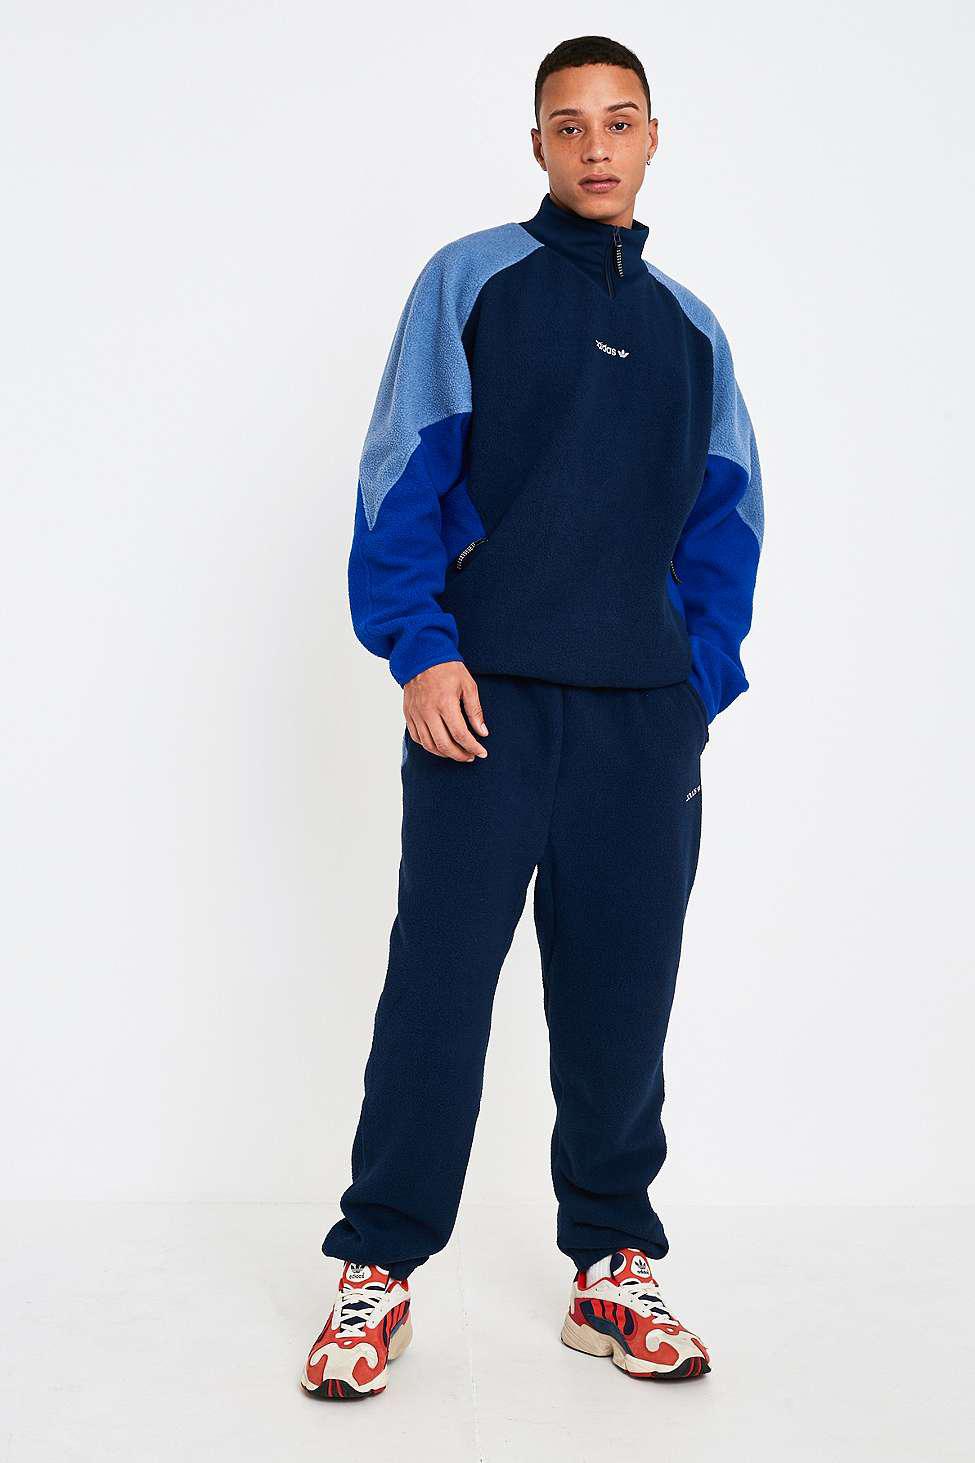 tek Dikkatli ol karşılaştırılabilir adidas eqt polar fleece jumper in navy  - svrepl.com